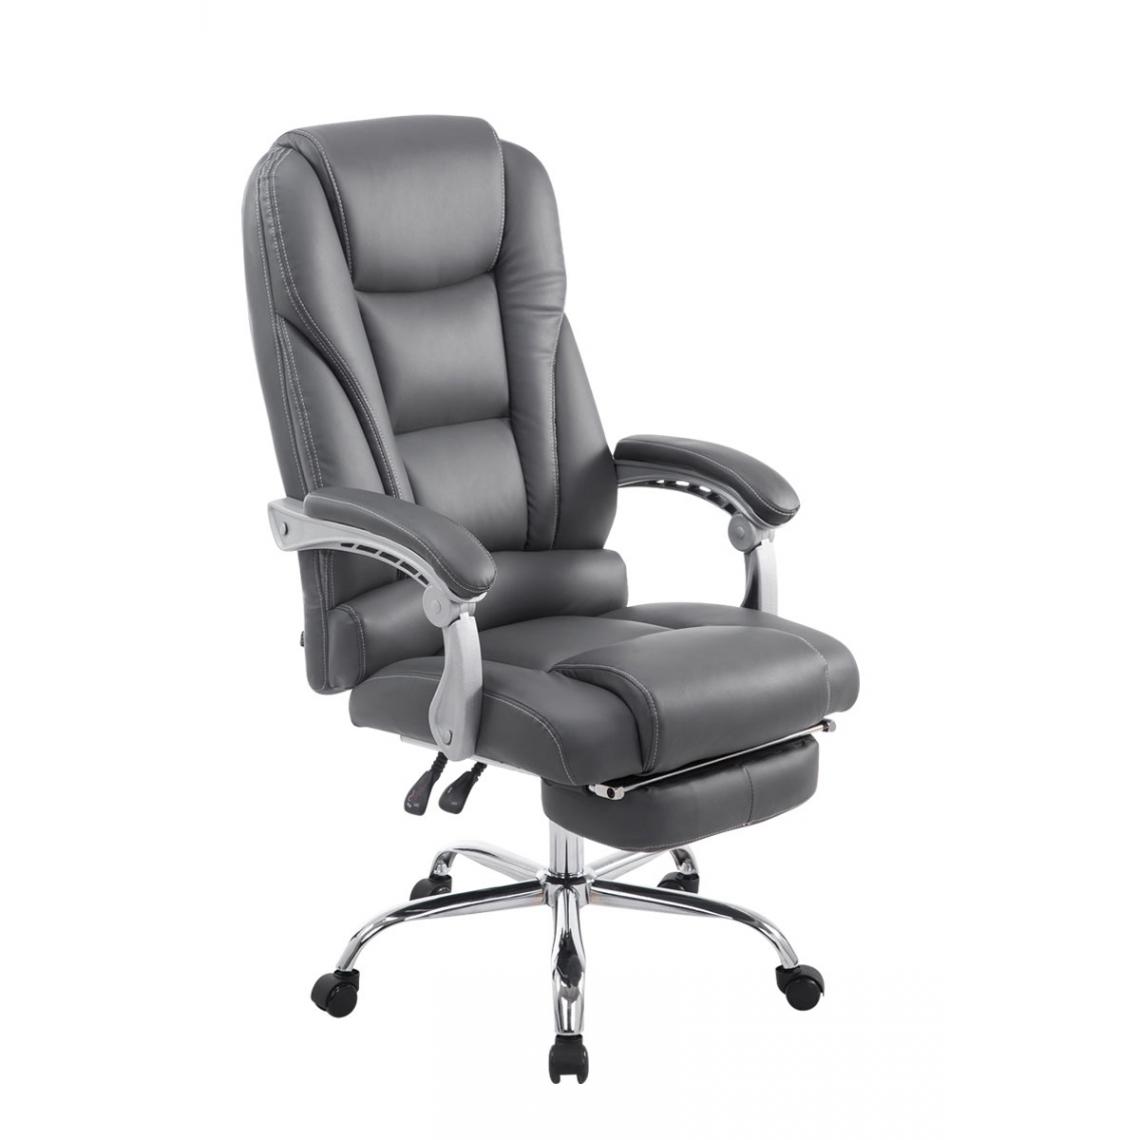 Icaverne - Superbe Chaise de bureau serie Quito couleur gris - Chaises